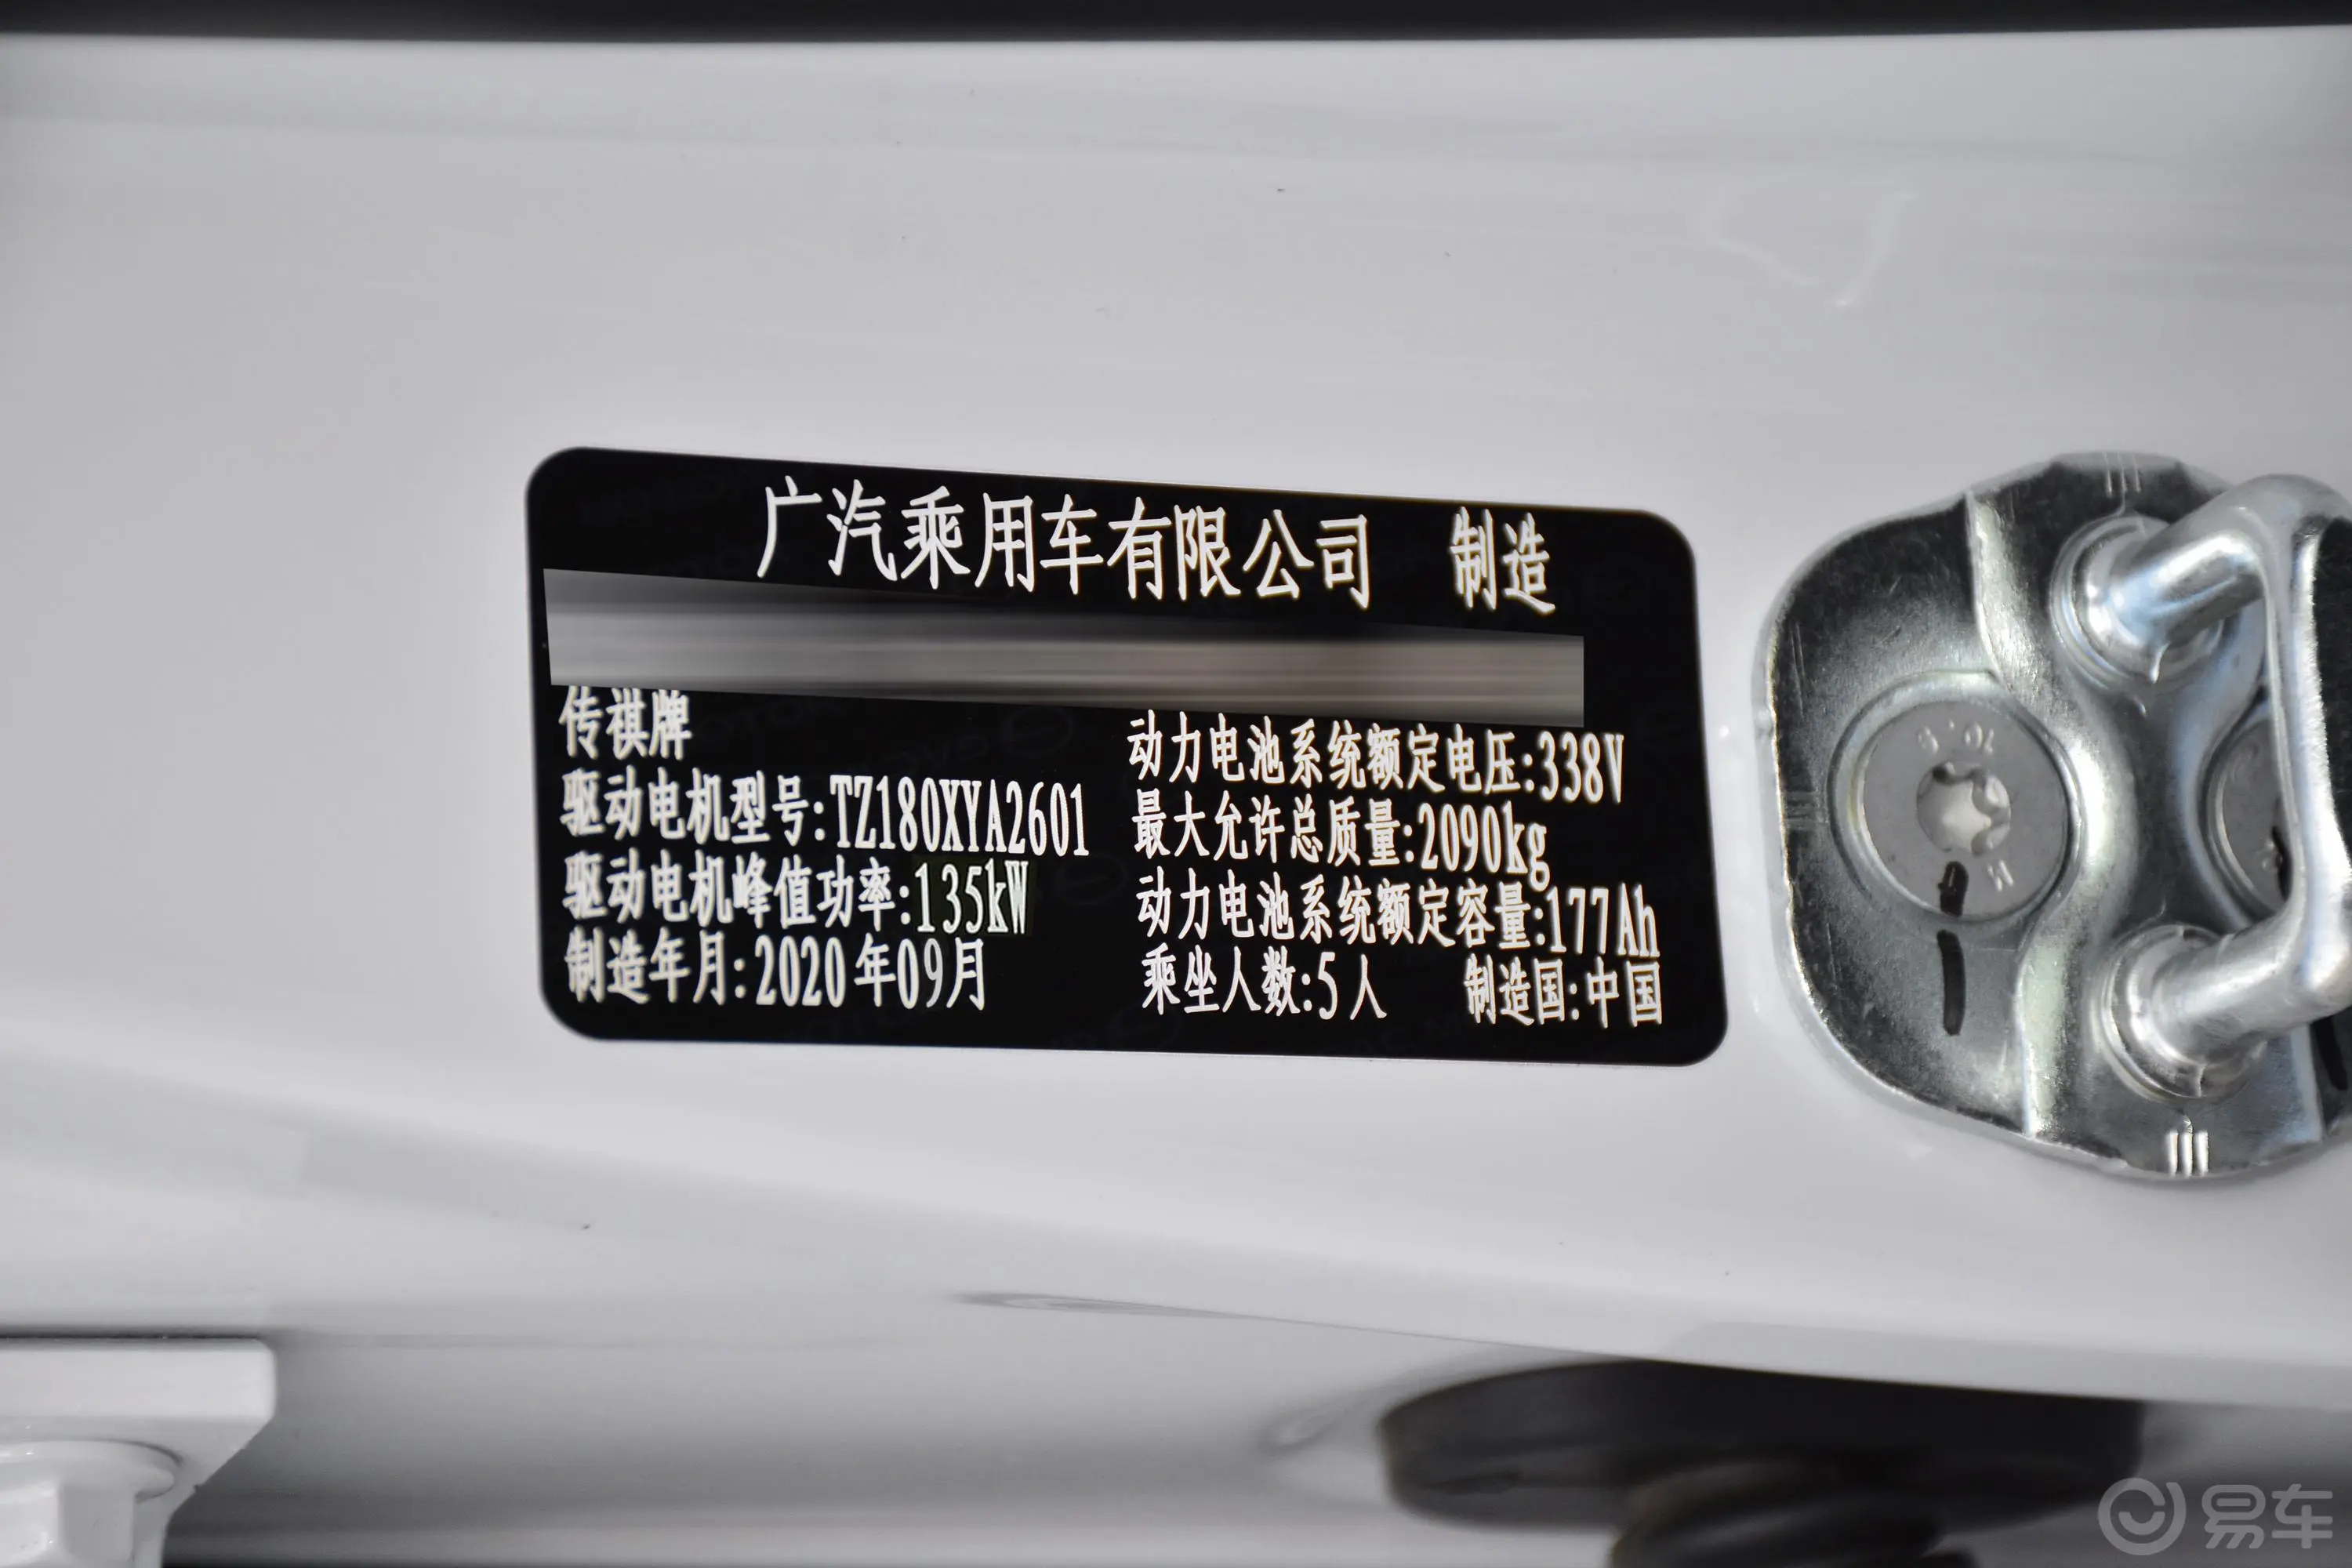 AION S510km 炫630 58.5kWh车辆信息铭牌